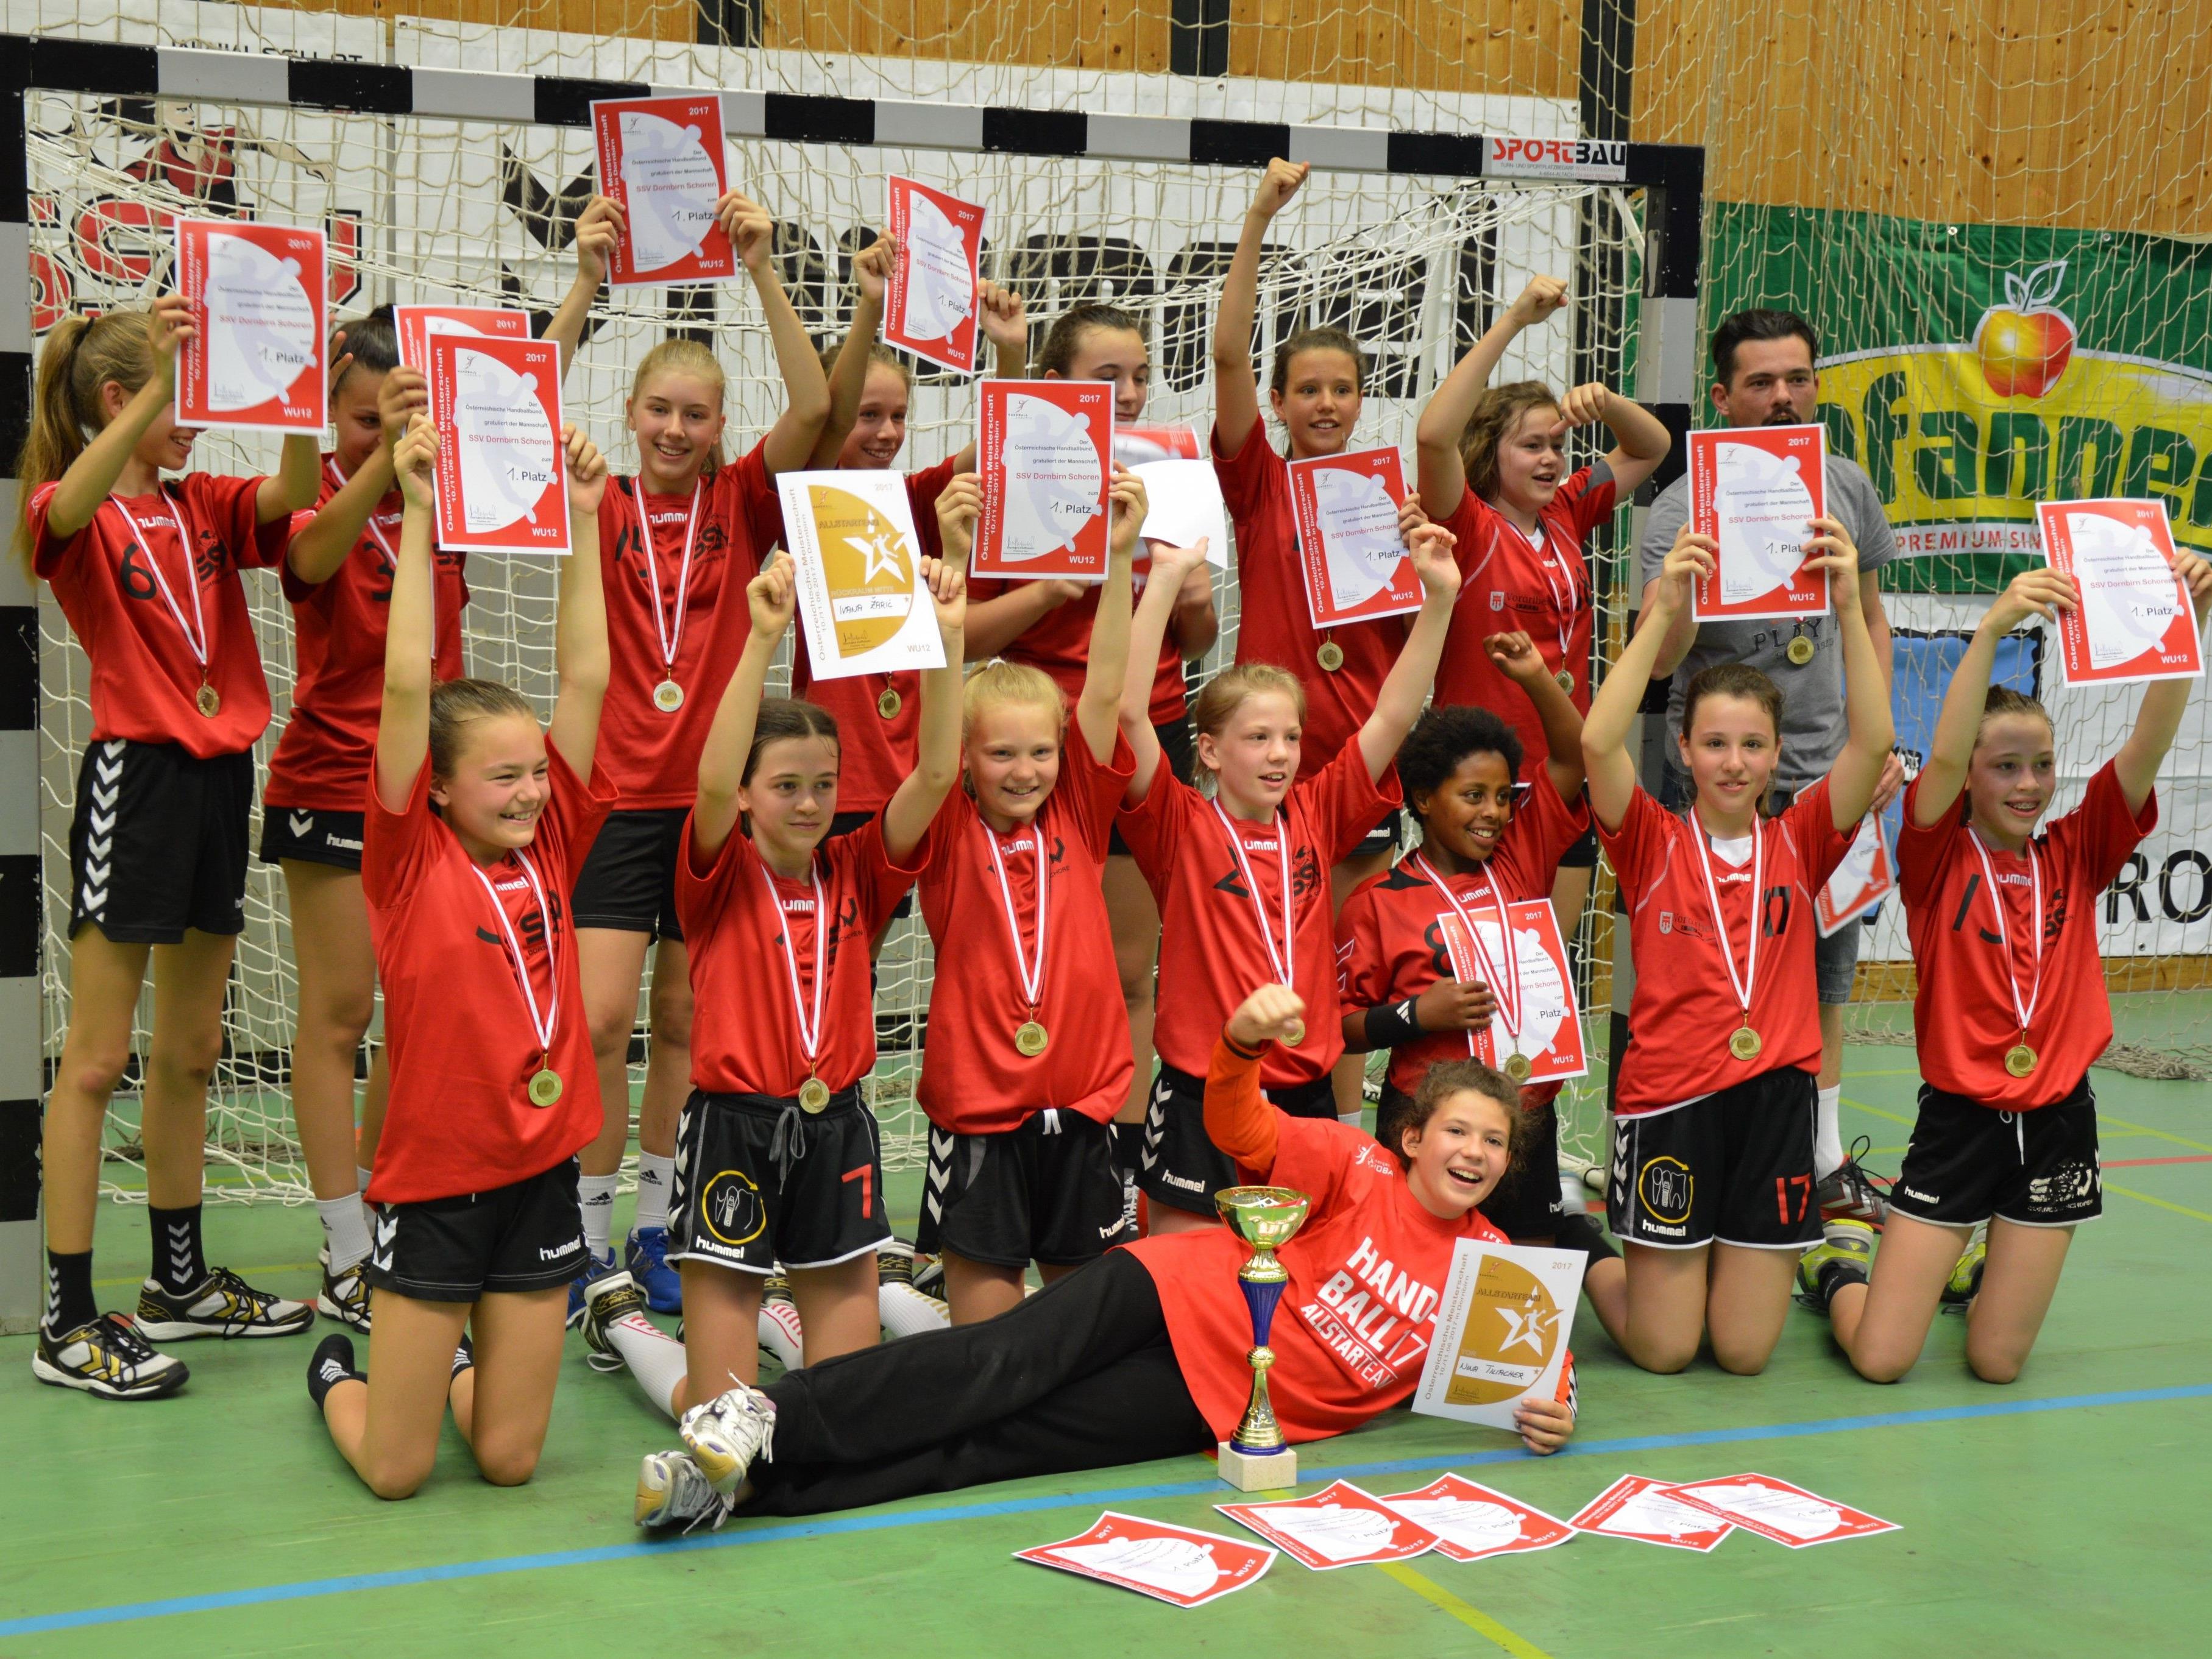 Großer Jubel beim U12-Team des SSV Dornbirn Schoren, das sich letztes Wochenende den Staatsmeistertitel im Handball holte.